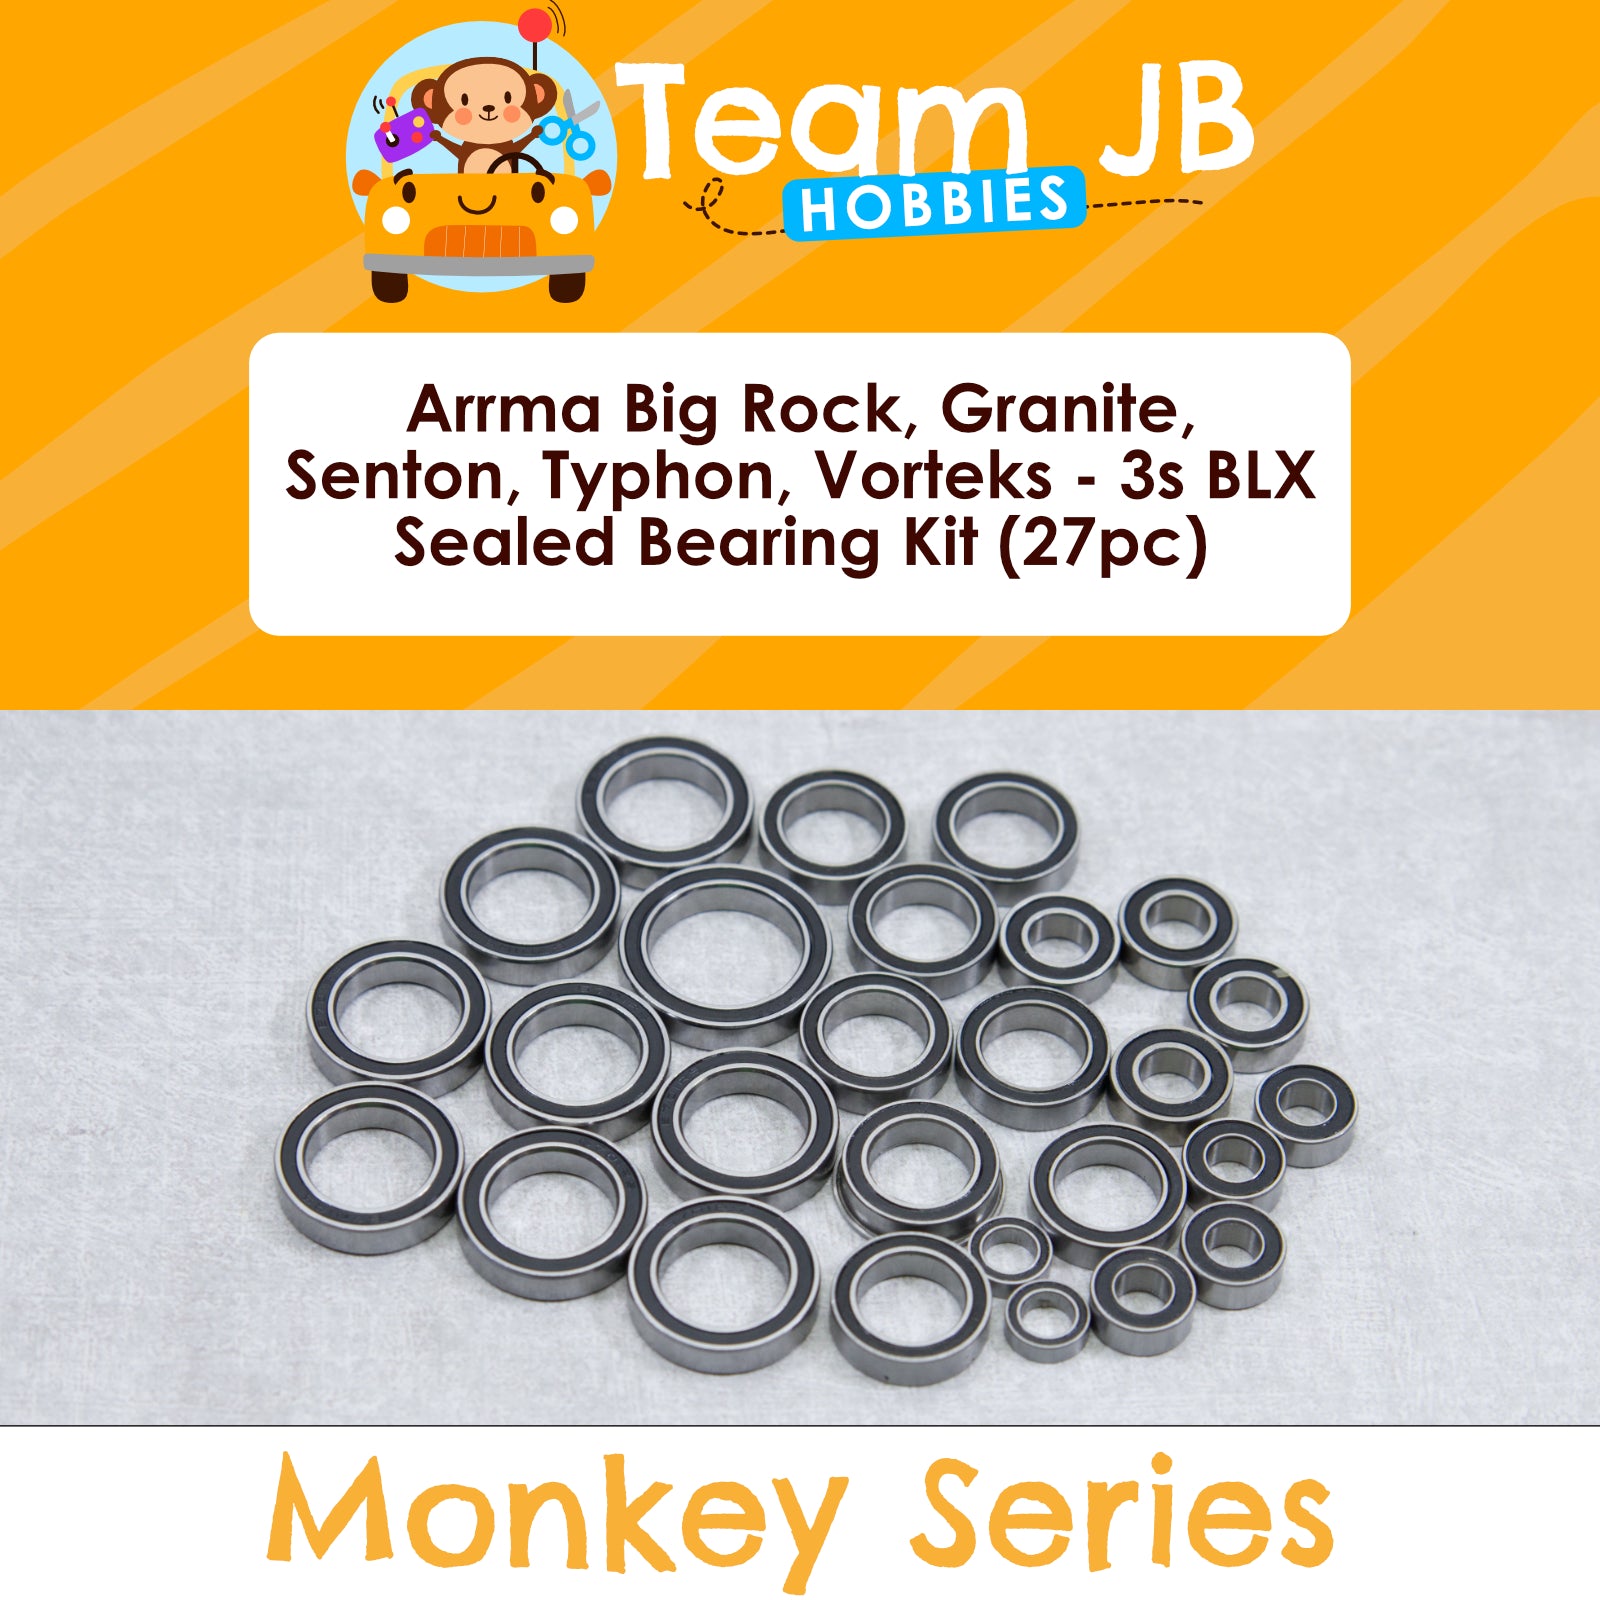 Arrma Big Rock, Granite, Senton, Typhon, Vorteks 3s BLX Sealed Bearing Kit